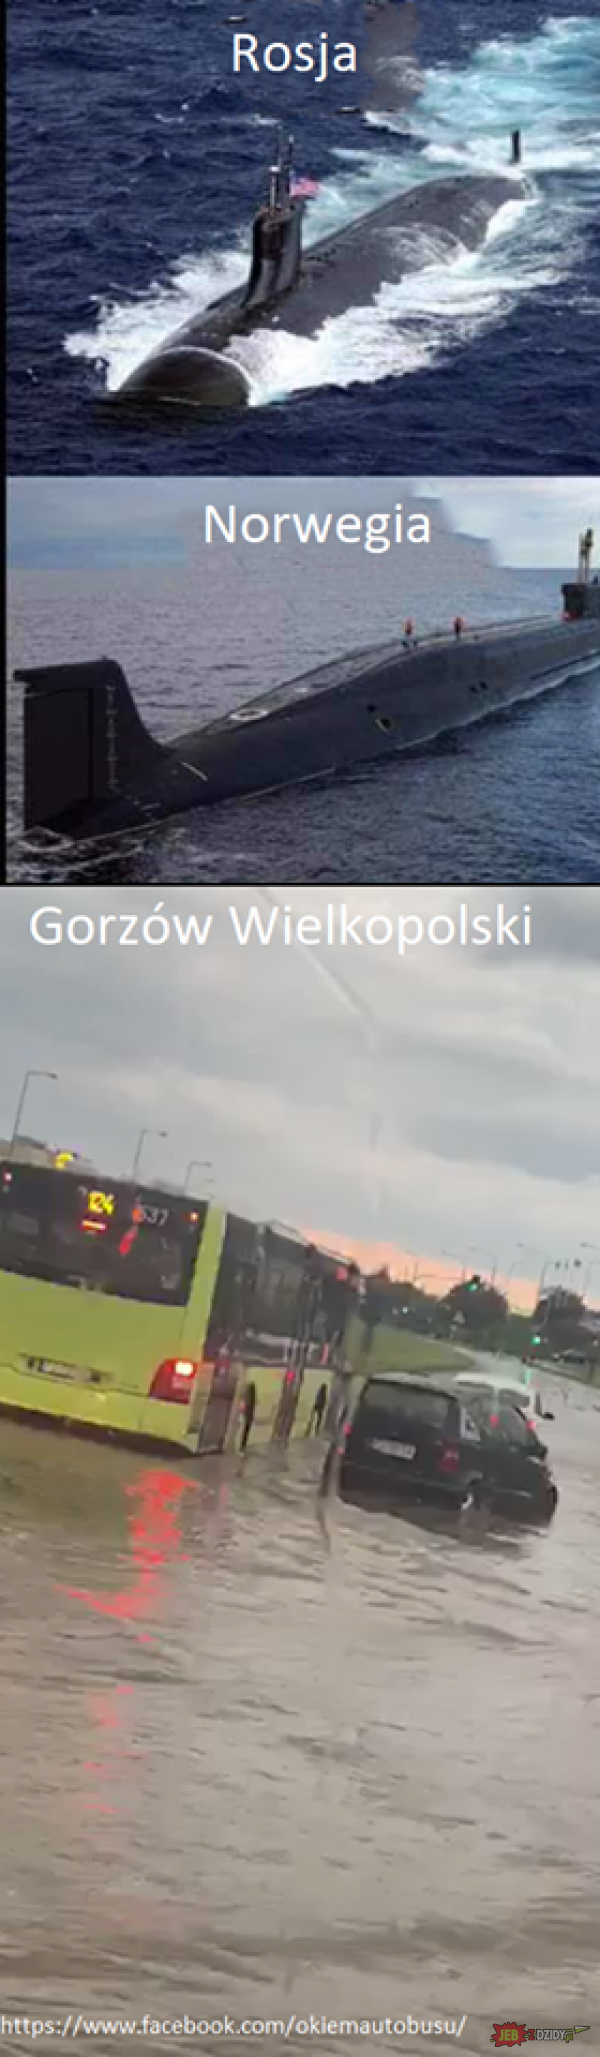 Polska łódź podwodna